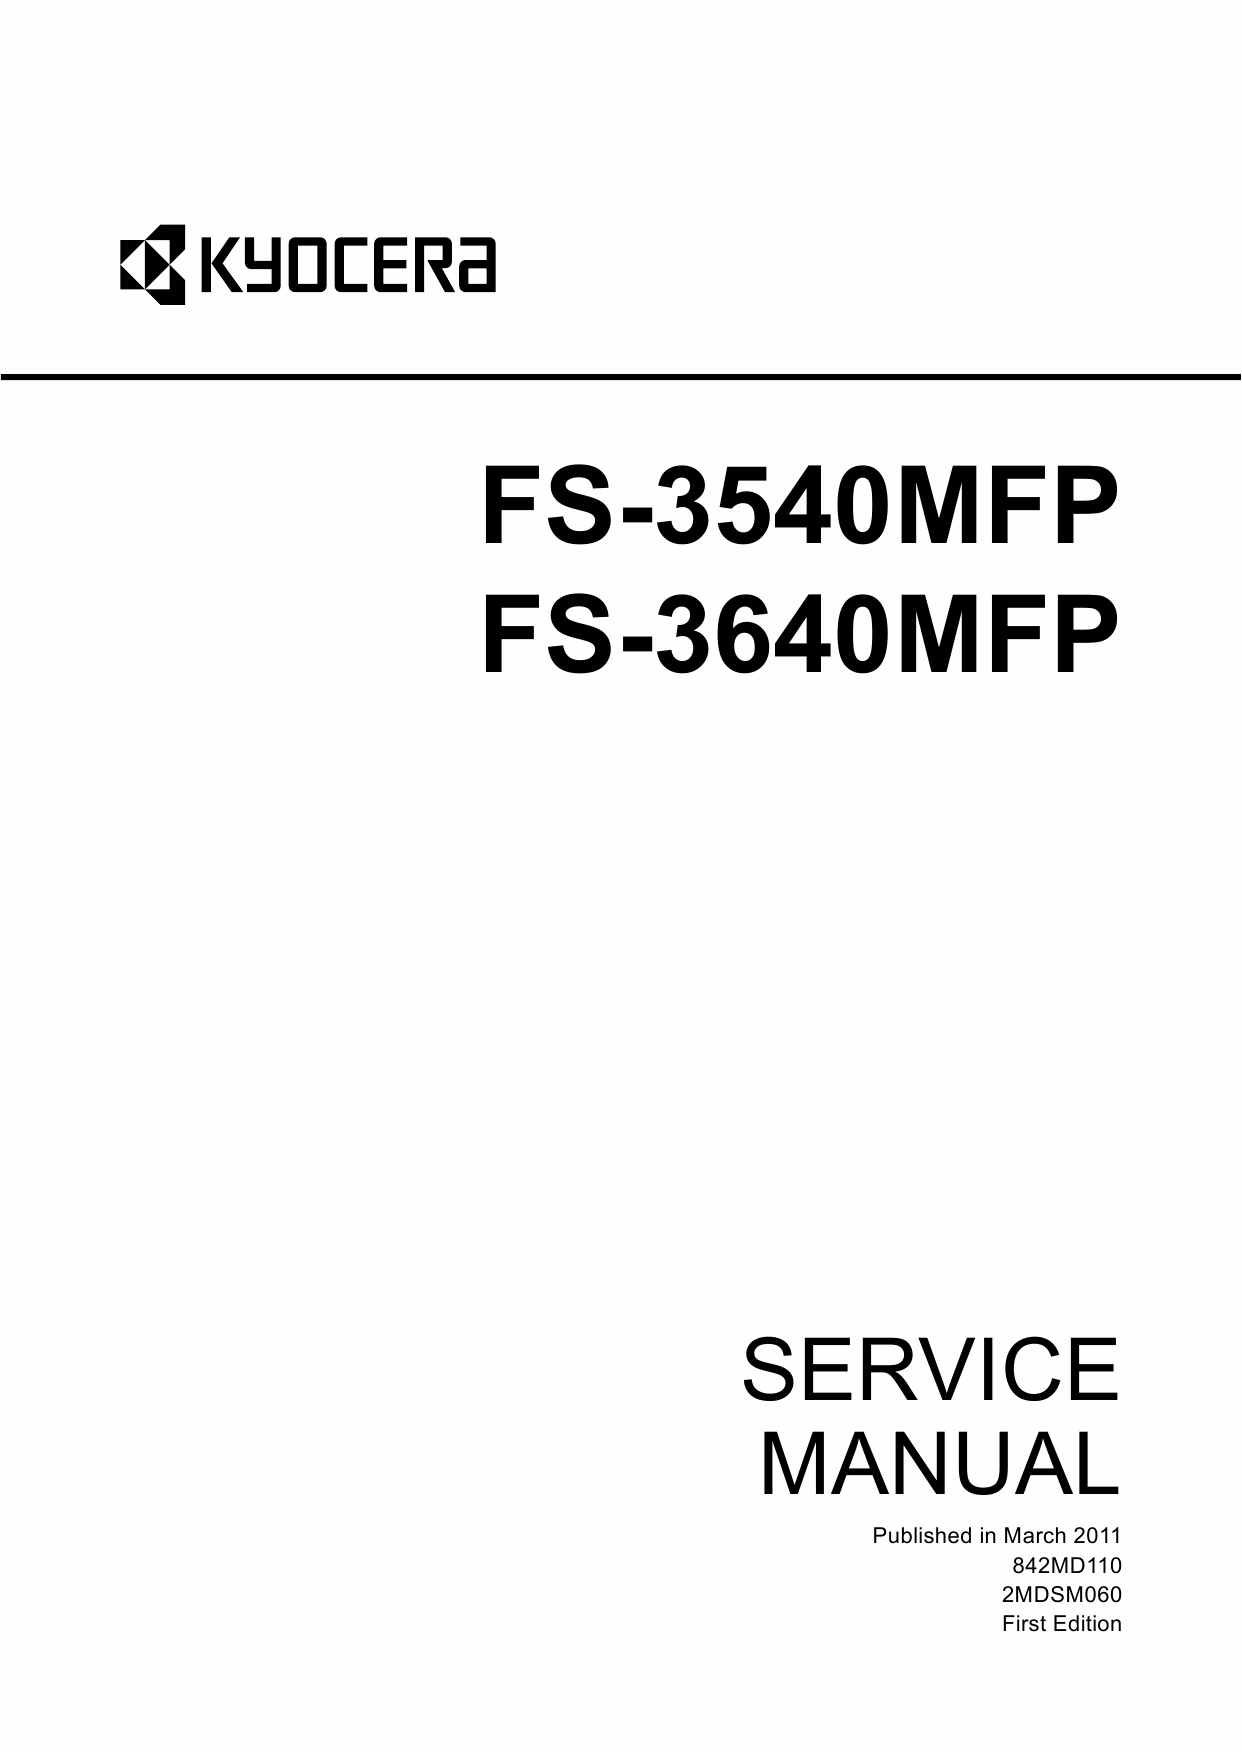 KYOCERA MFP FS-3540MFP 3640MFP Service Manual-1